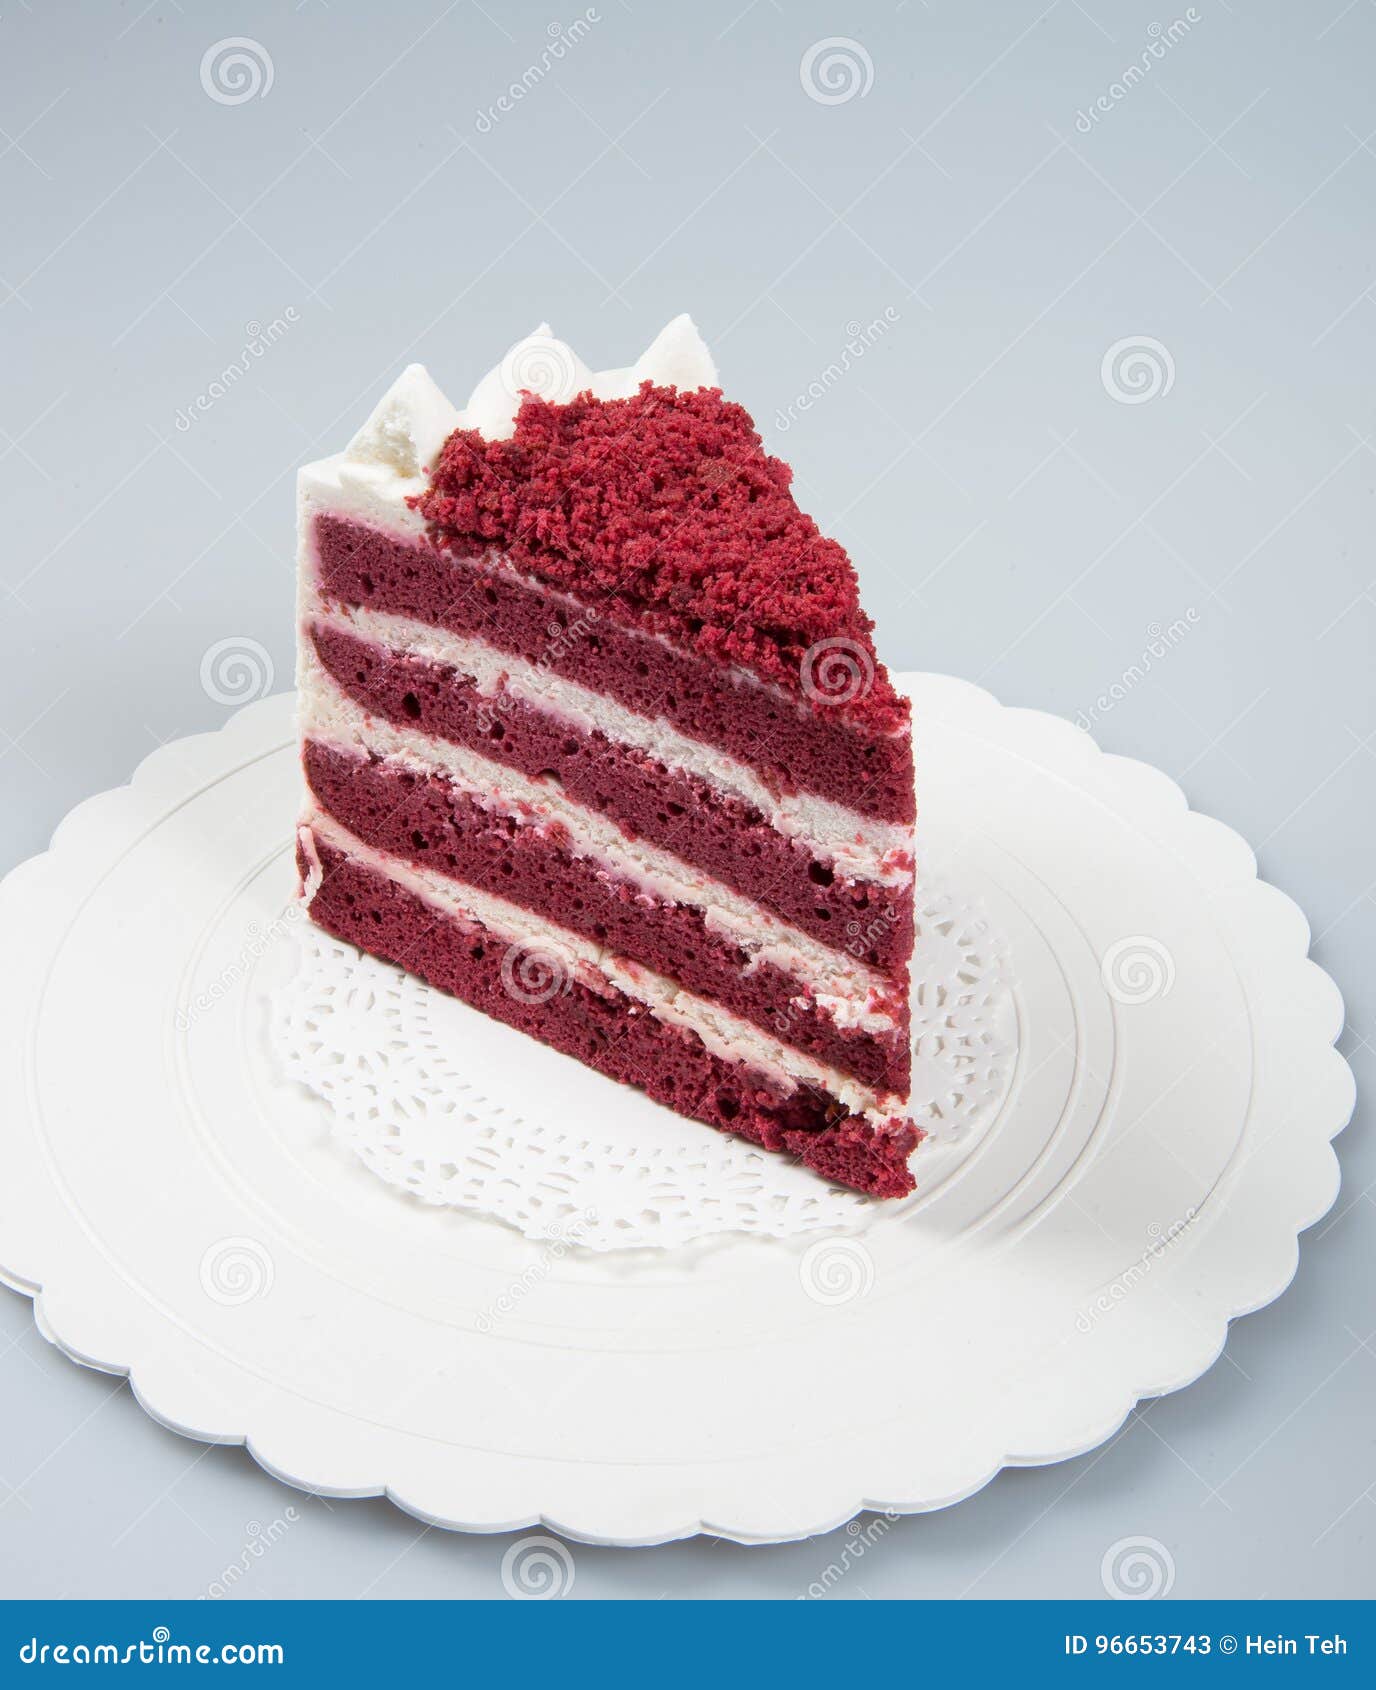 Как правильно кусочек или кусочек. Тоненький кусочек торта. Тонюсенький кусочек торта. Тонкий кусок торта. Очень тонкие кусочки торта.